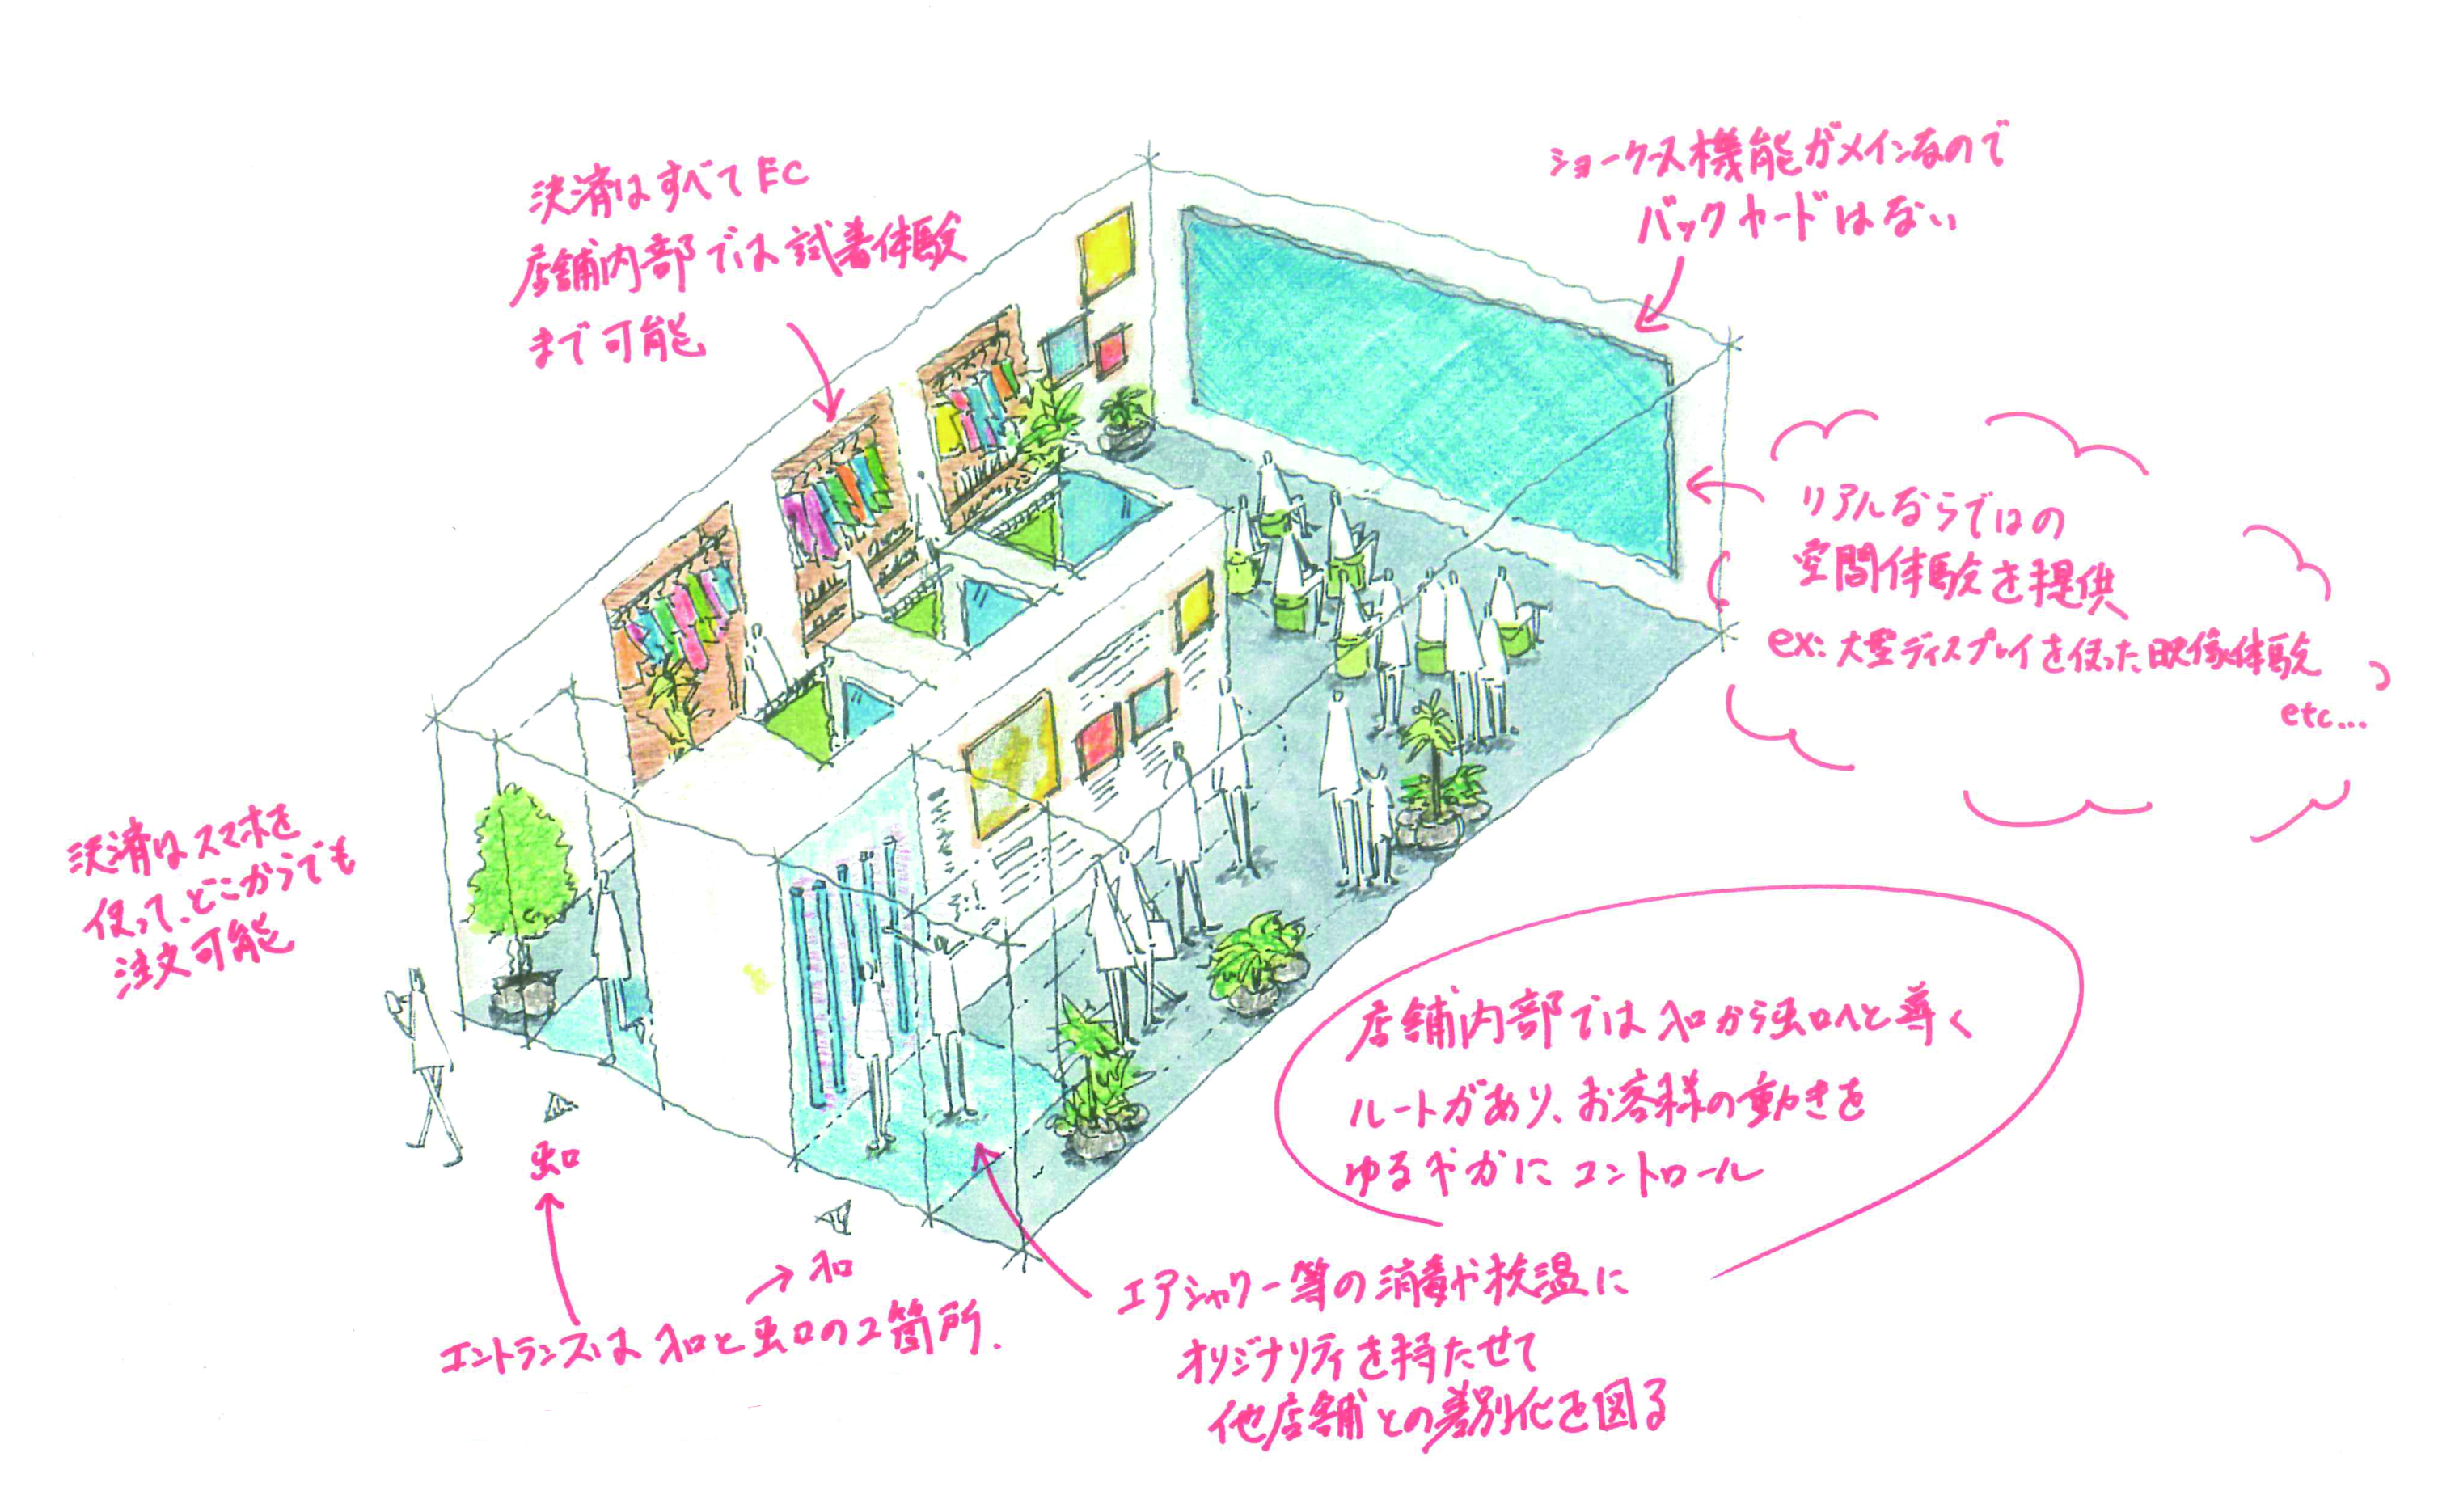 店舗体験のニューノーマルについて考える 野田 裕暉 オープンプランナー